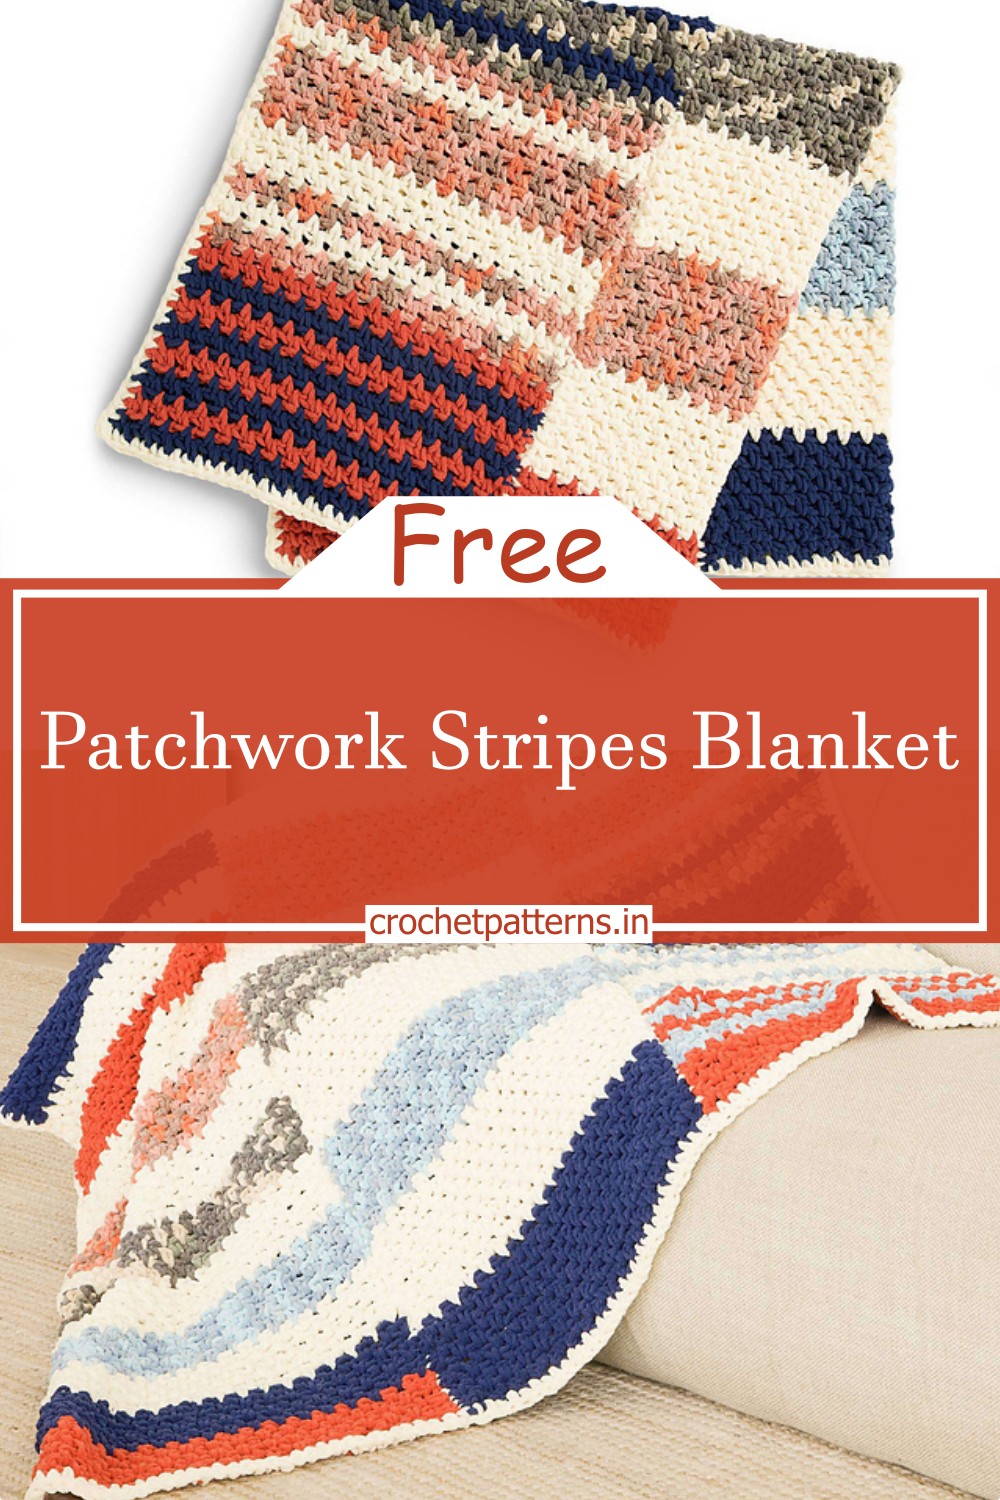 Patchwork Stripes Blanket